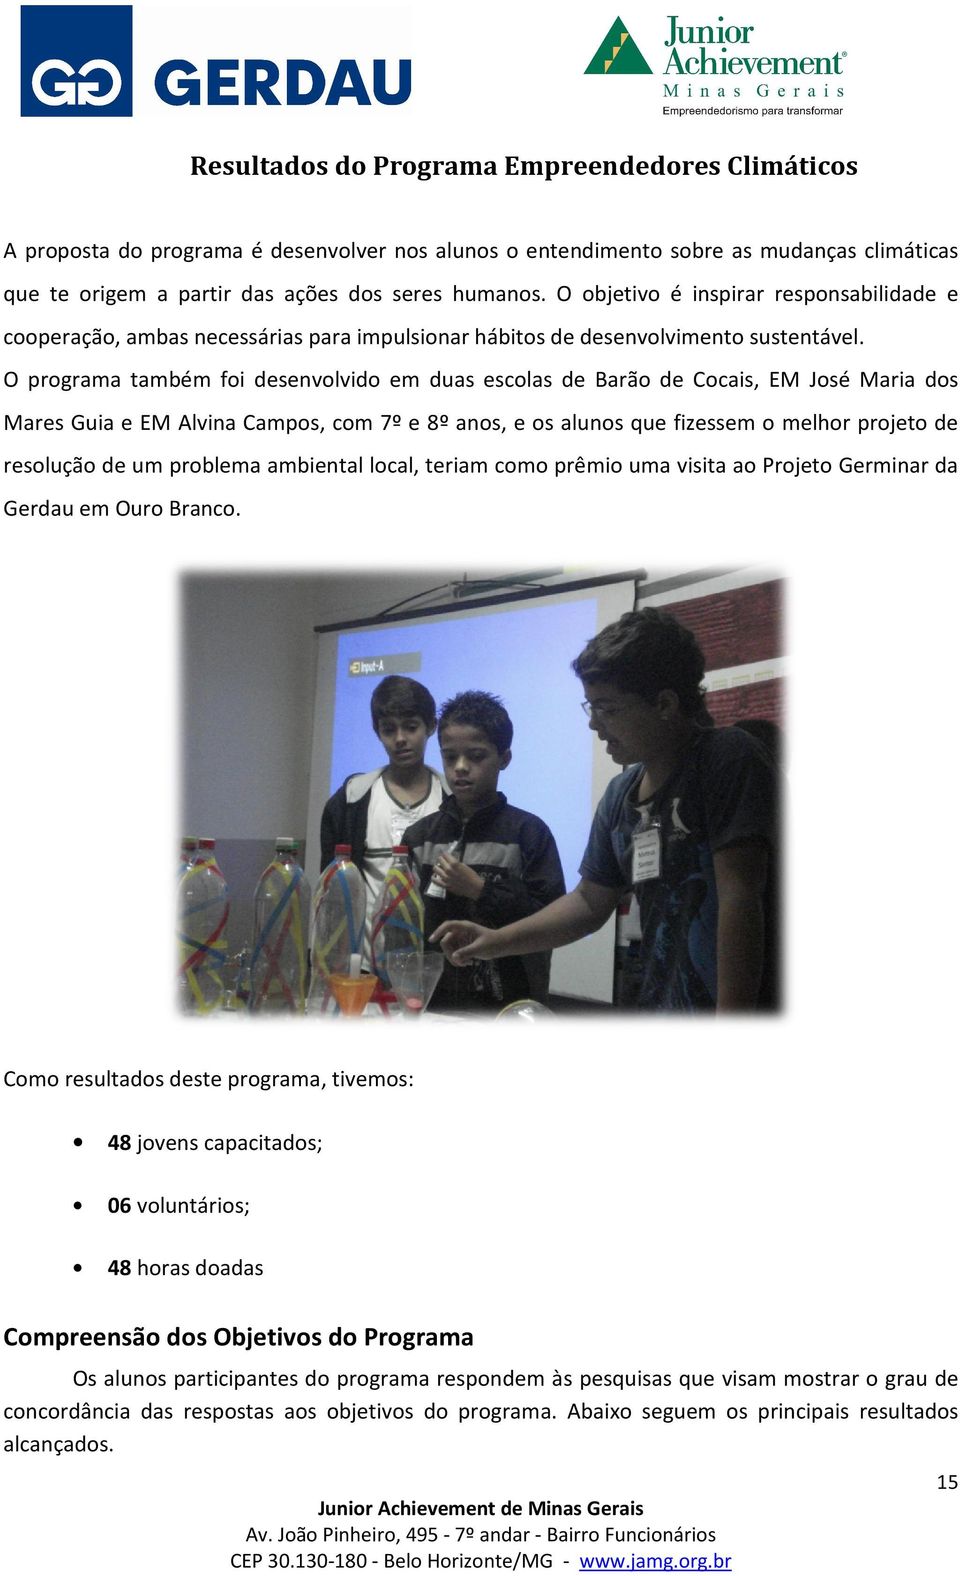 O programa também foi desenvolvido em duas escolas de Barão de Cocais, EM José Maria dos Mares Guia e EM Alvina Campos,, com 7º e 8º anos, e os alunos que fizessem o melhor projeto de resolução de um